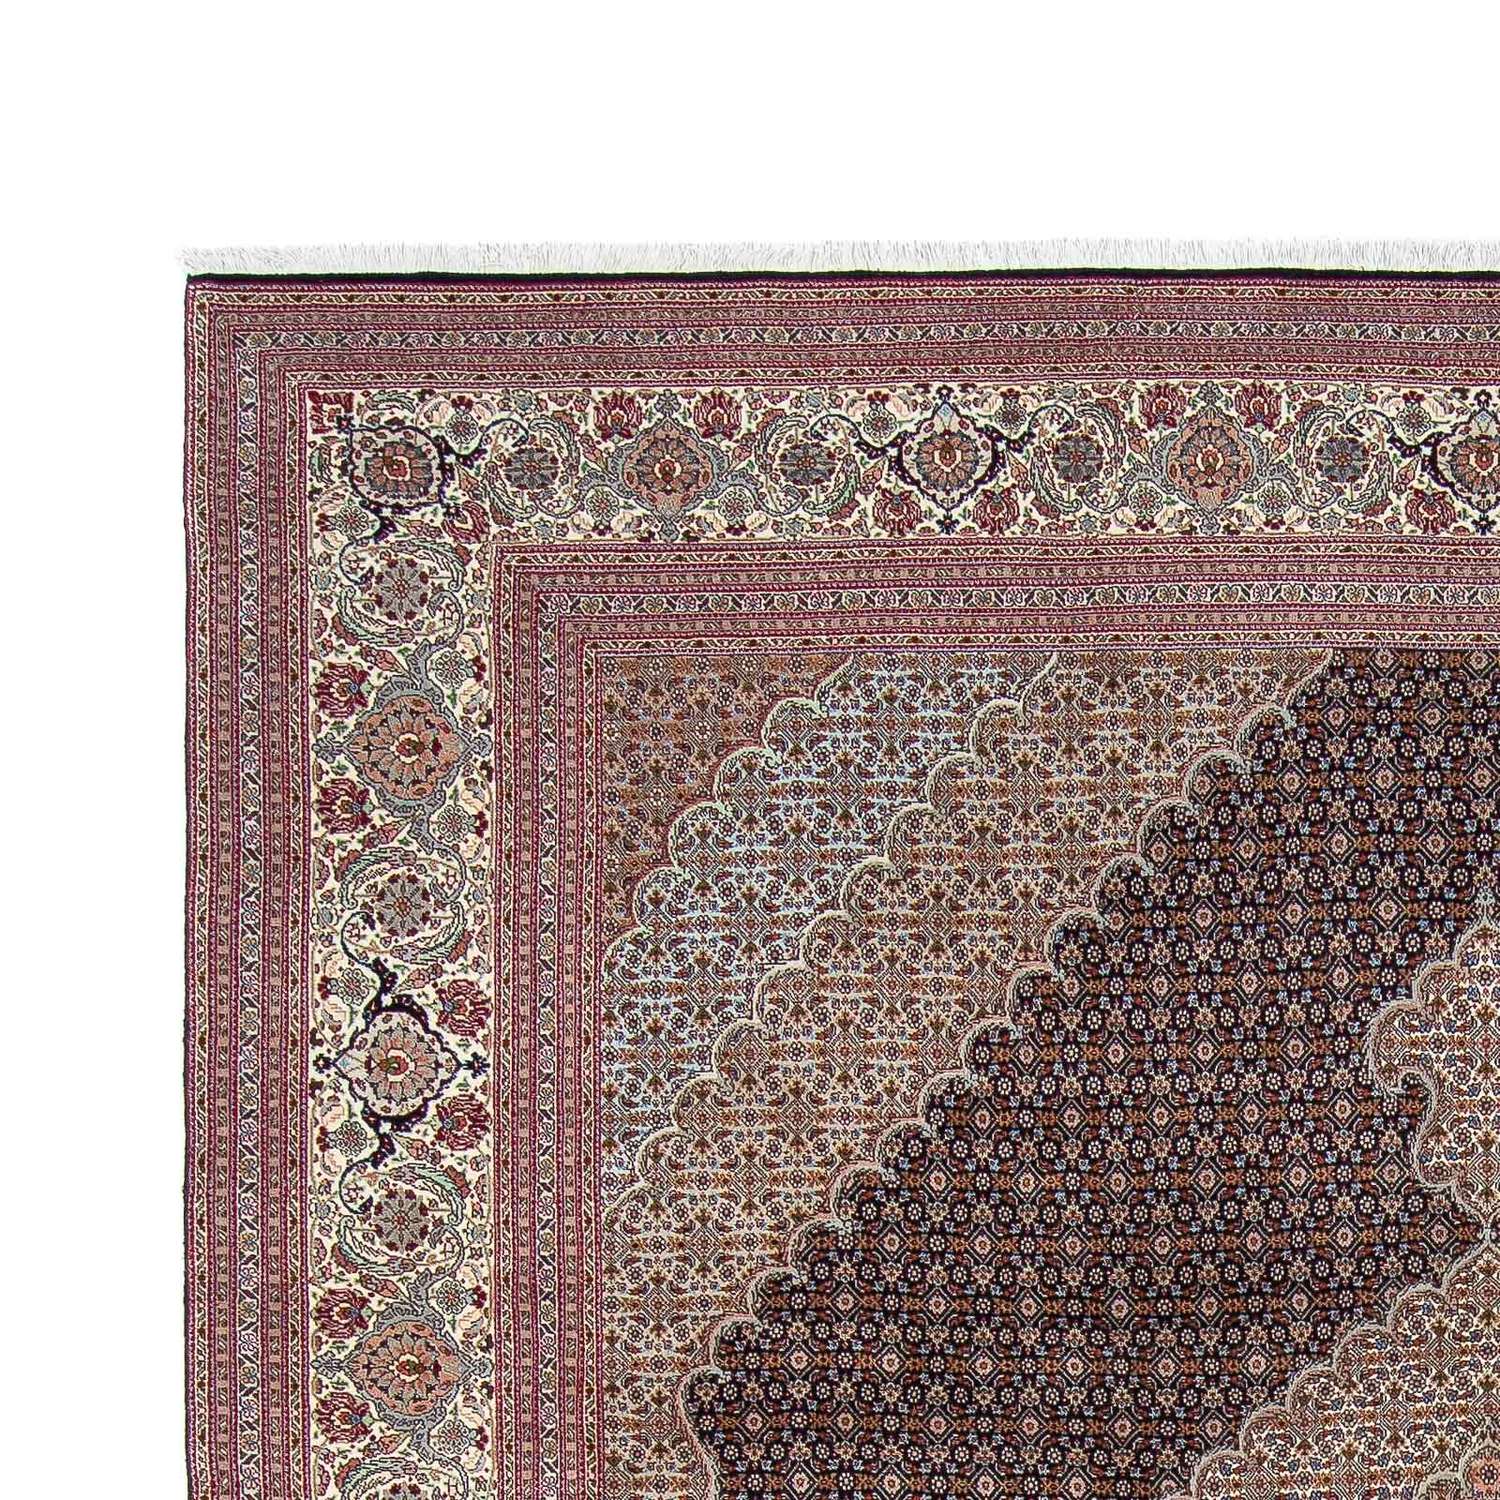 Tapis persan - Tabriz - 310 x 251 cm - marron clair